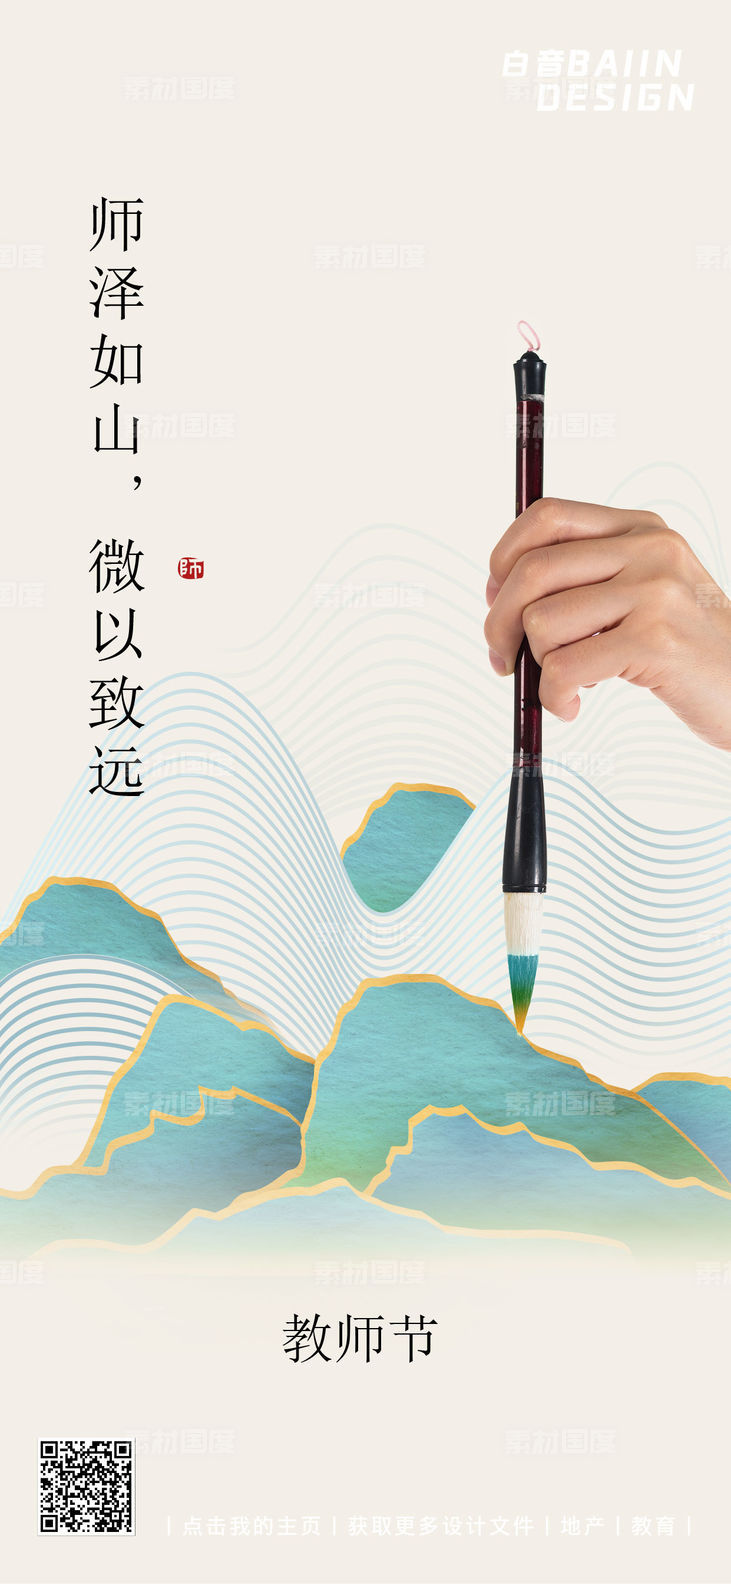 教师节新中式毛笔祝福海报